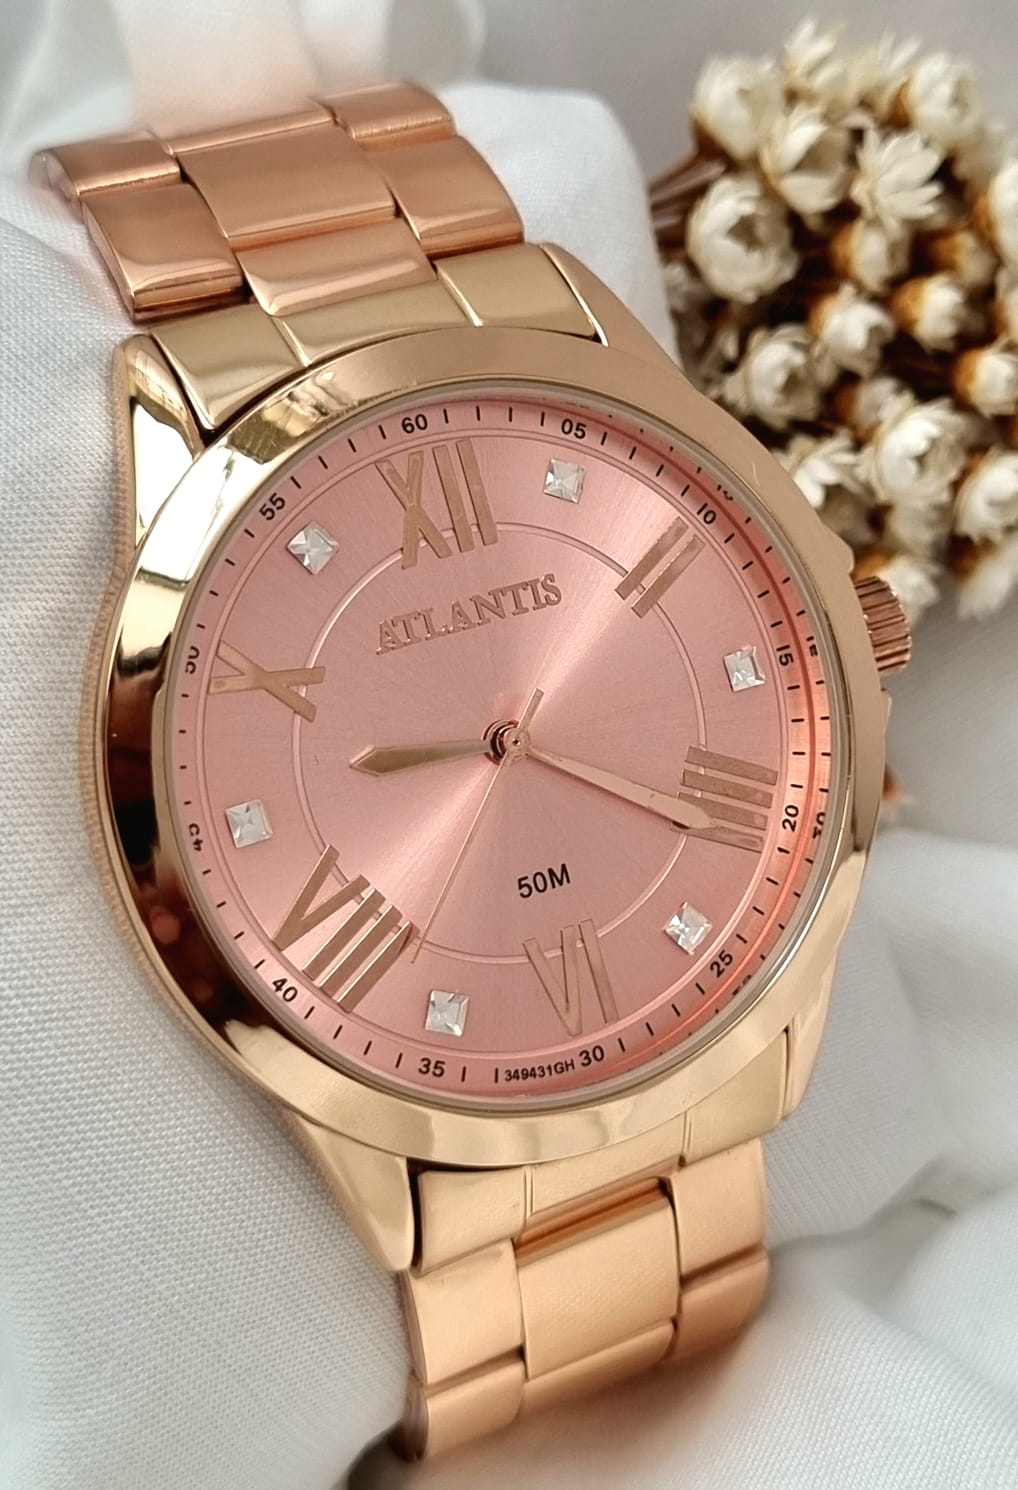 Relógio Feminino Atlantis Rosé G34941